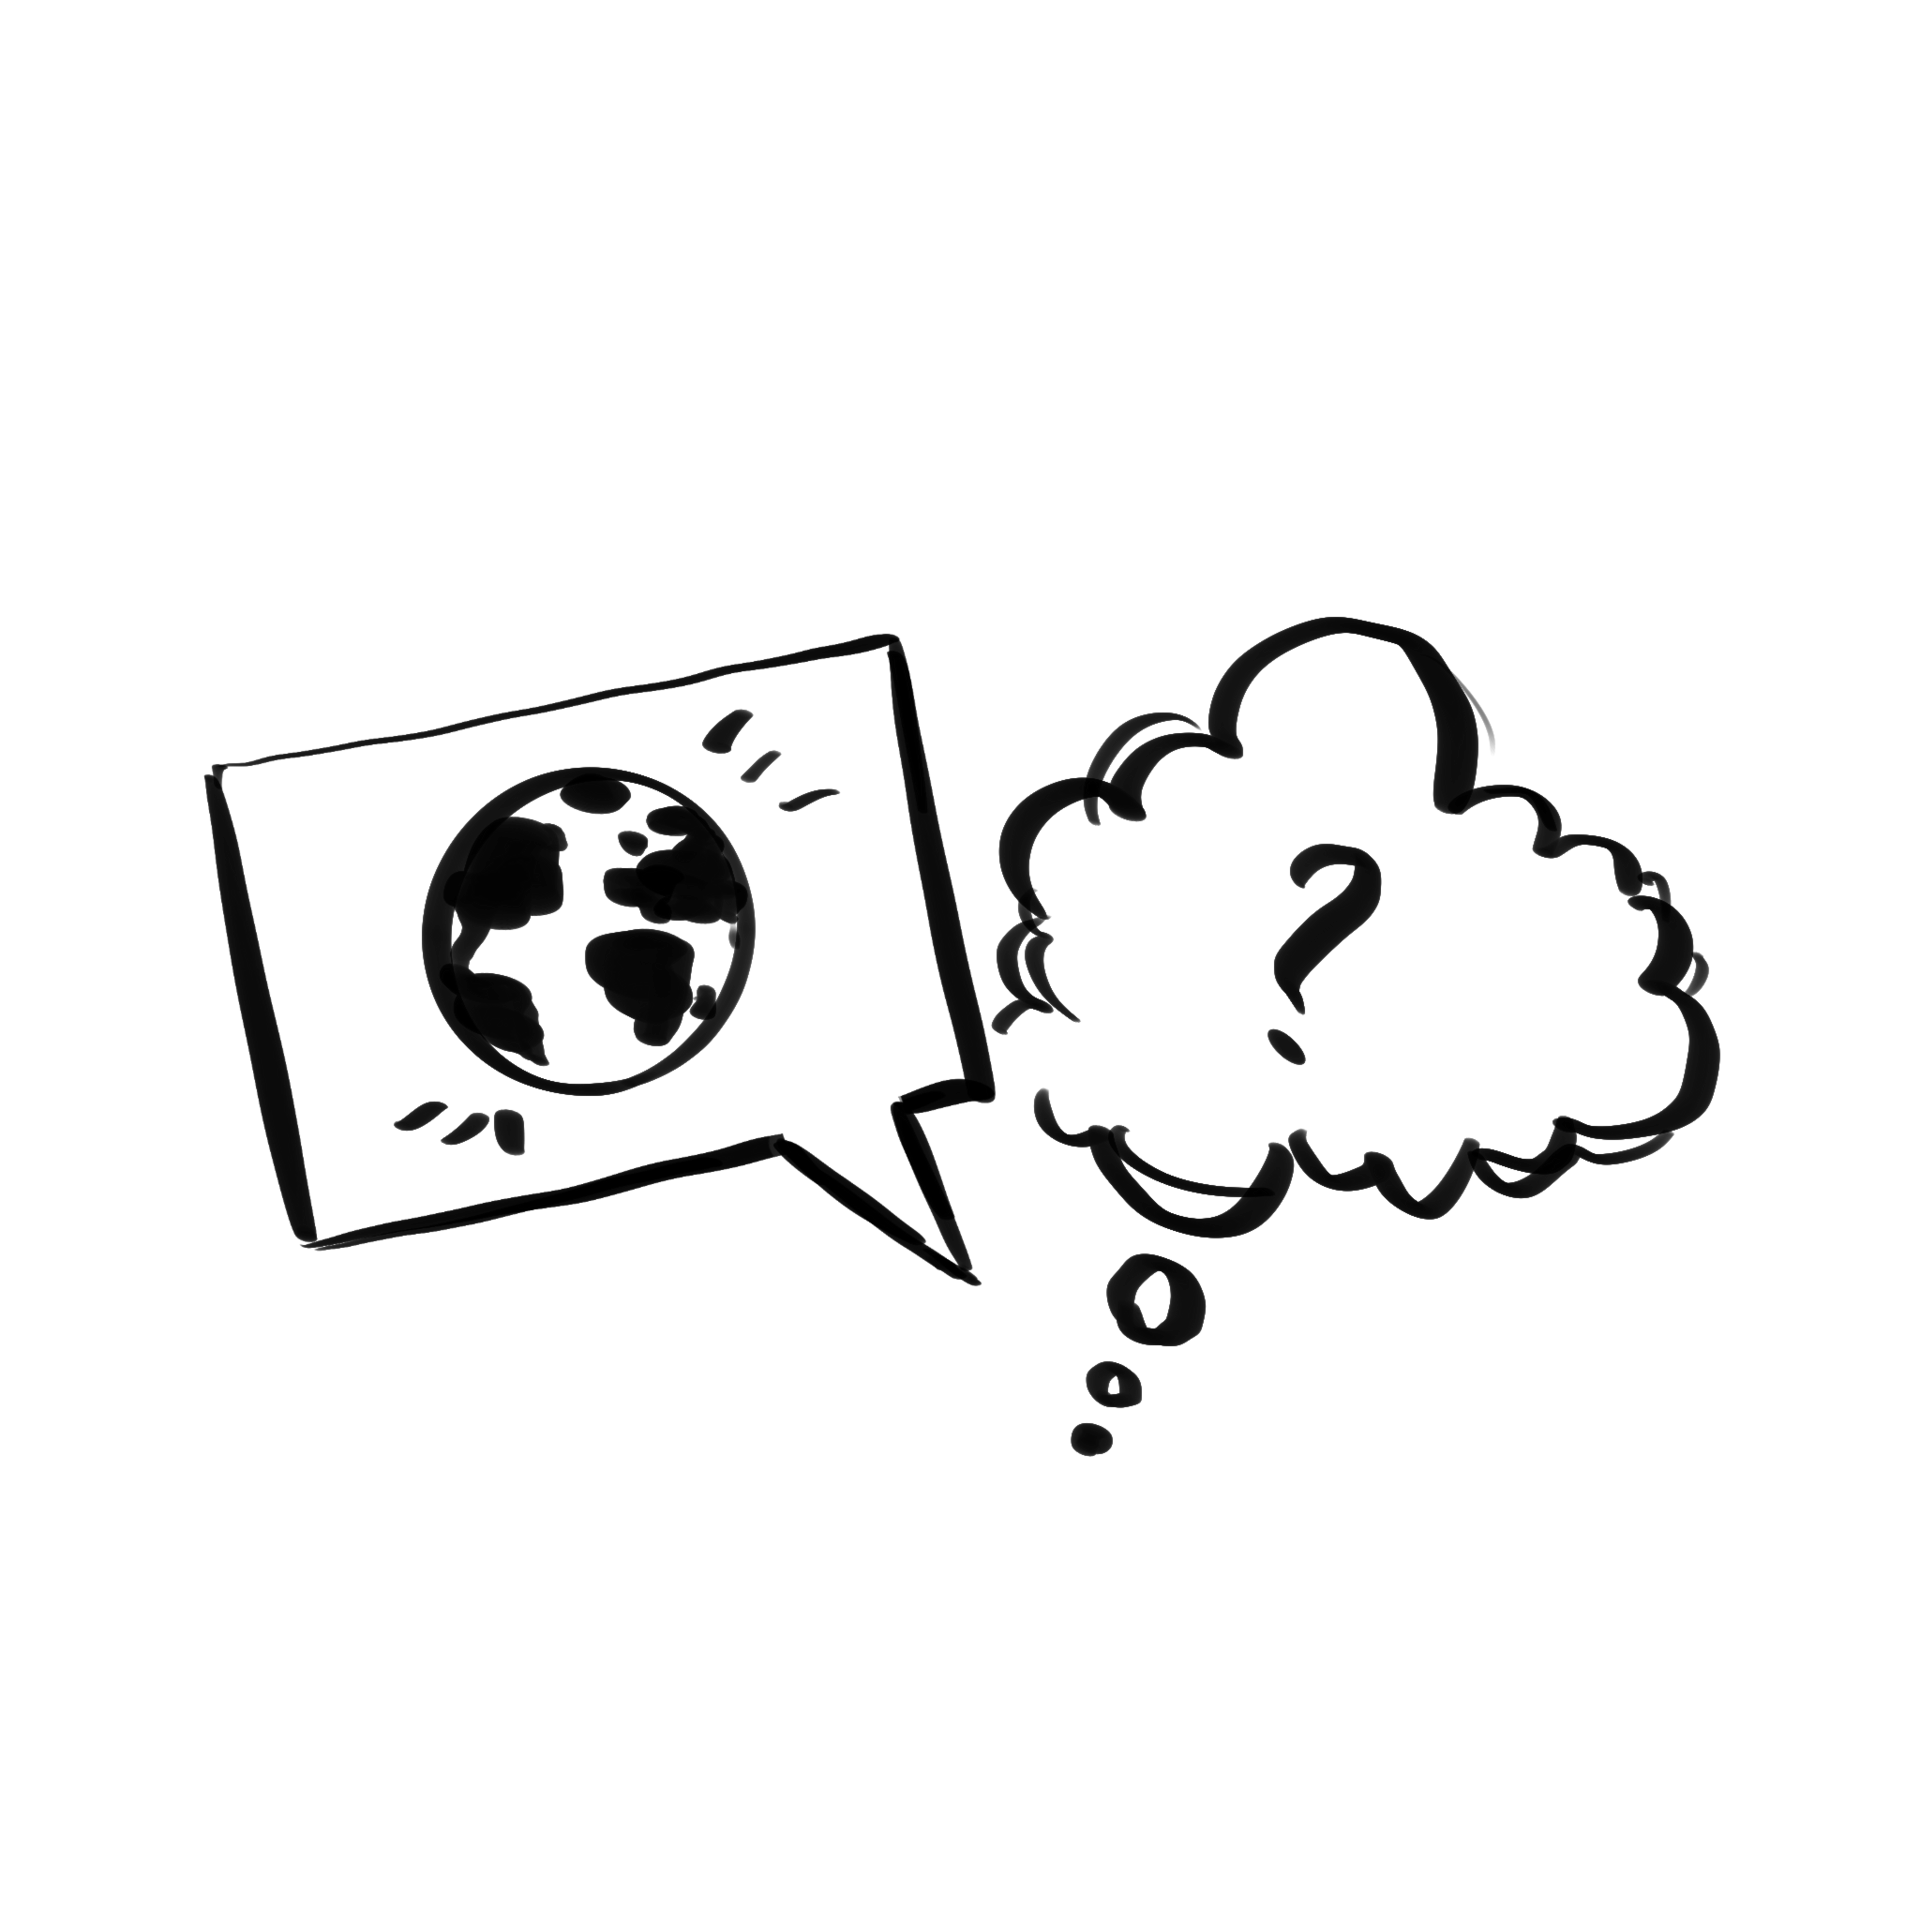 Alternativtext zum ersten Symbol: Links ist eine rechteckige Sprechblase mit Erdkugel darin, rechts eine Denkblase mit Fragezeichen.